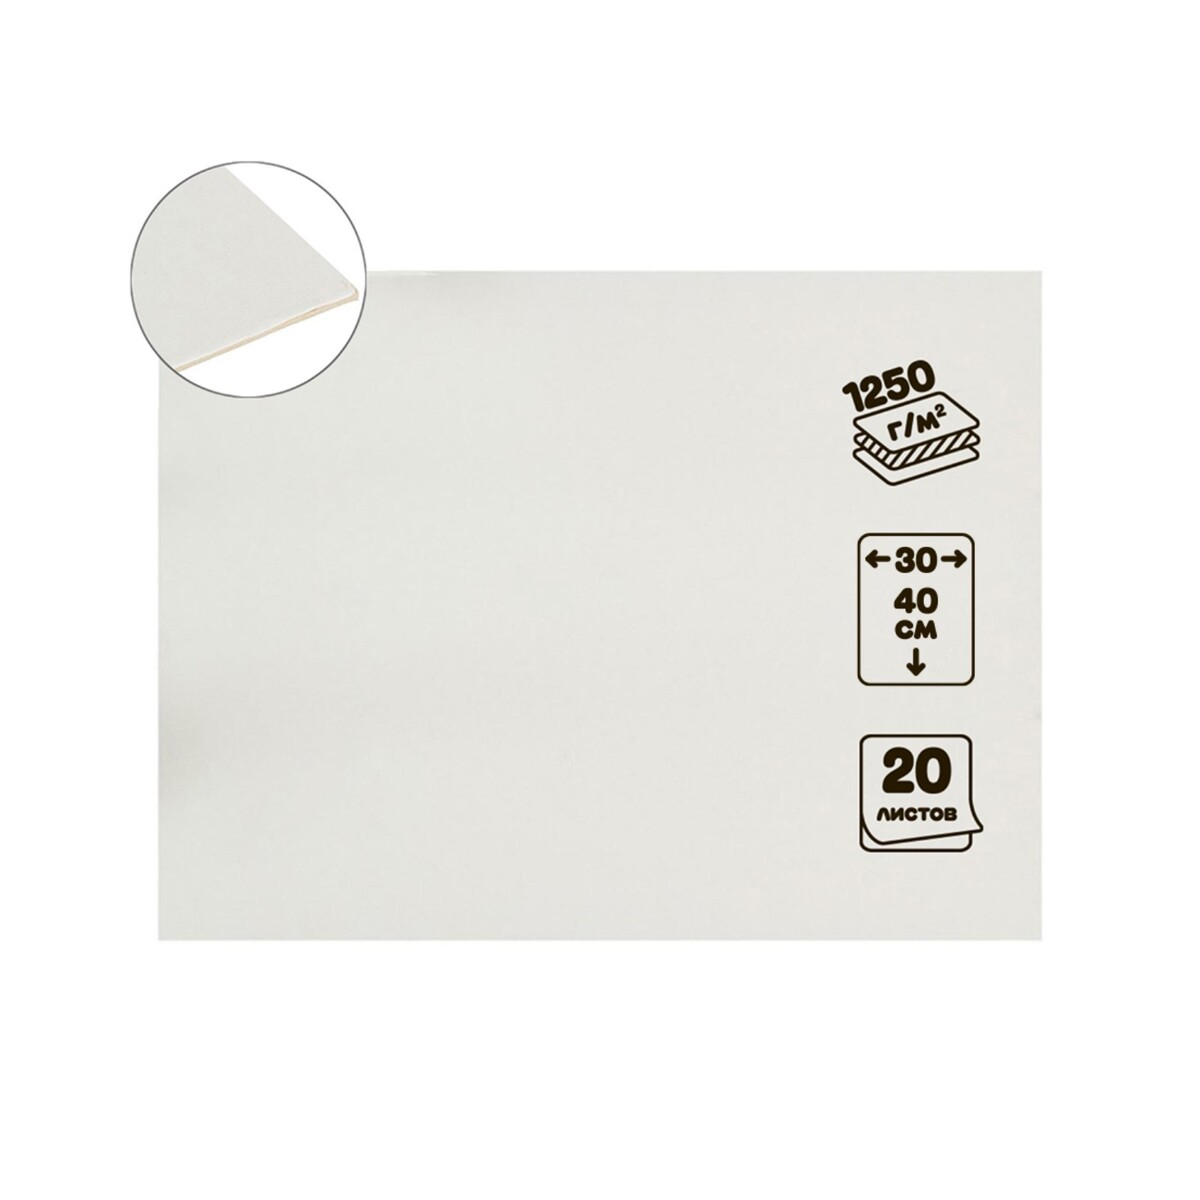 Картон переплетный 2.0 мм, 30 х 40 см, 20 листов, 1250 г/м², белый картон белый а4 10 листов мульти пульти